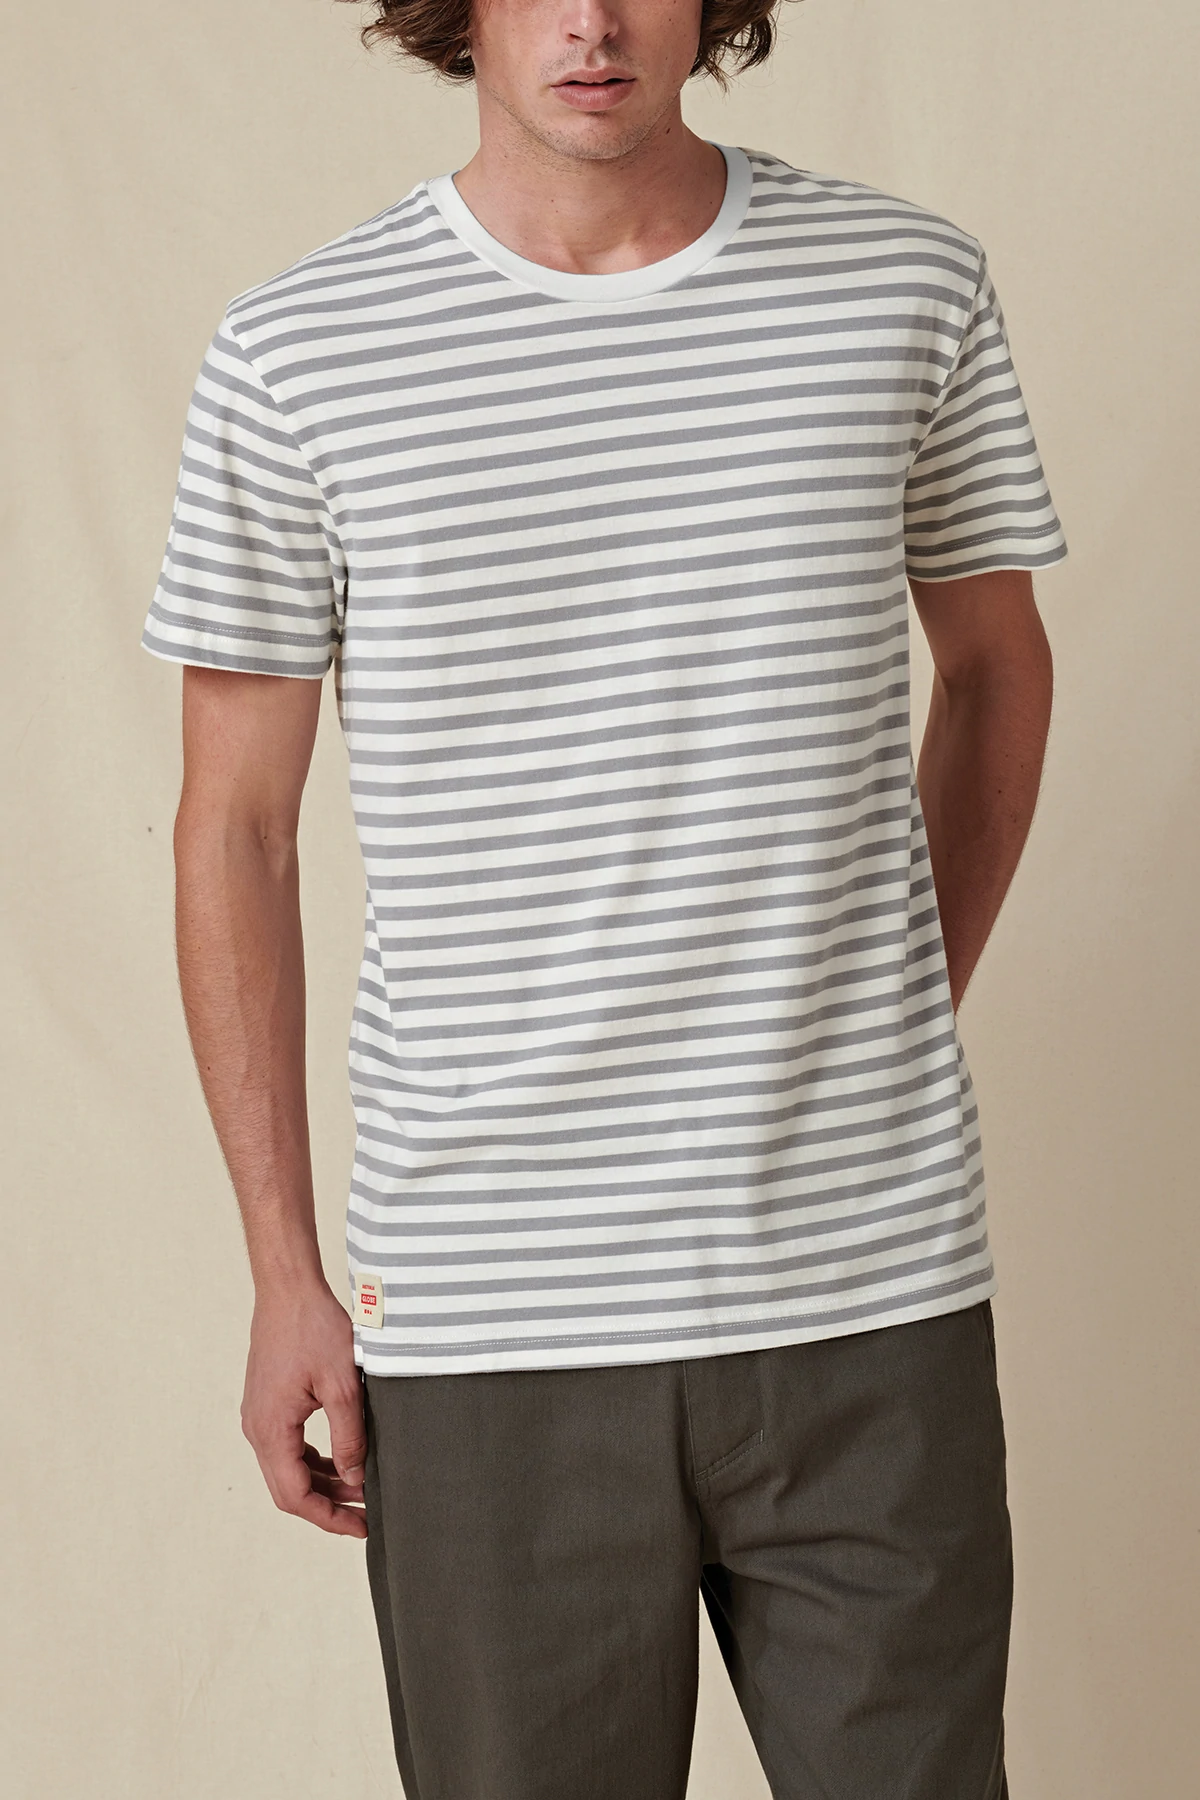 Globe Horizon Striped T-shirt white